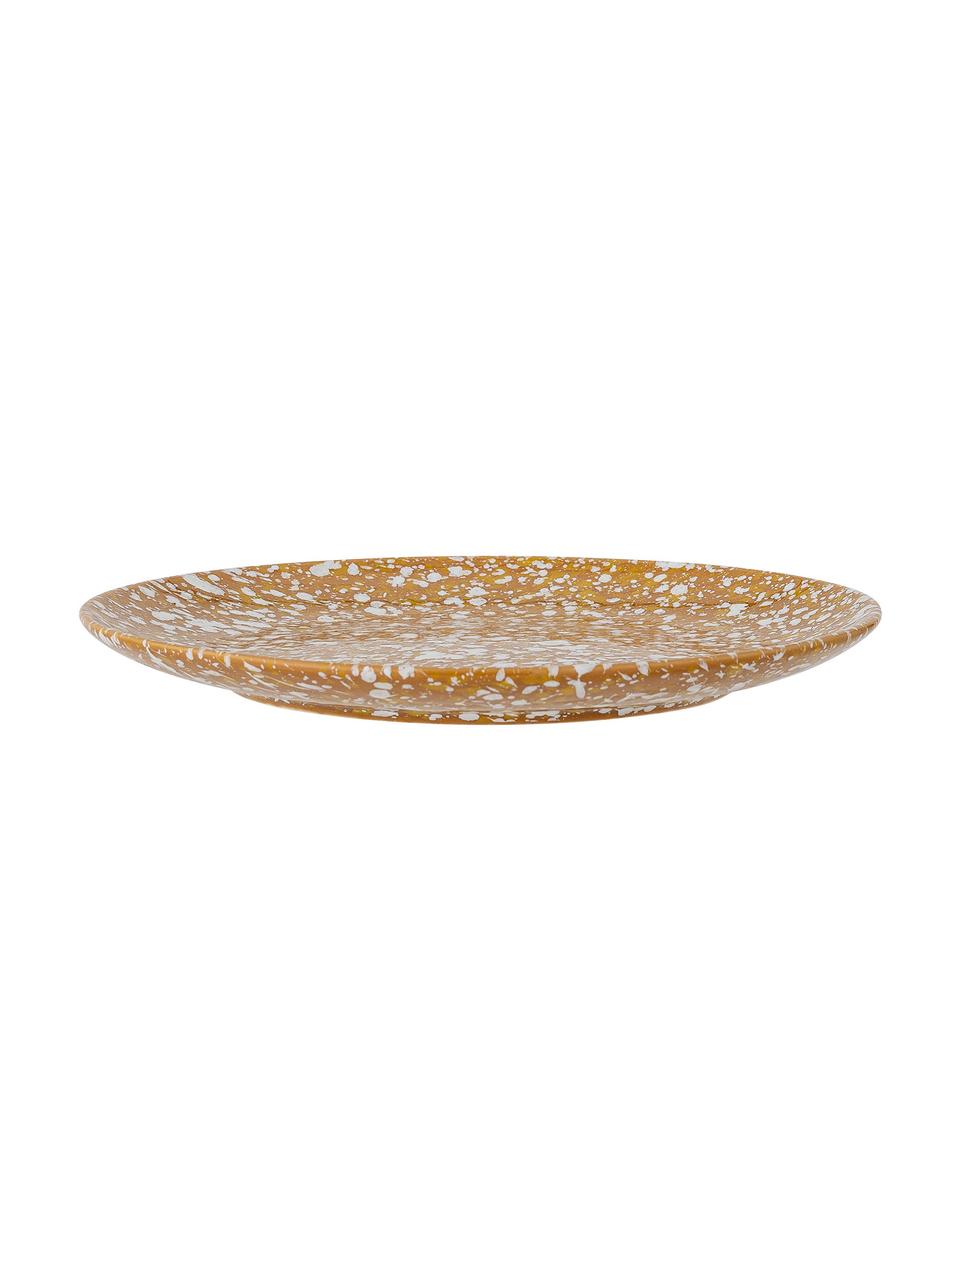 Raňajkový tanier s efektnou glazúrou Carmel, 2 ks, Kamenina, Hnedá, béžová, Ø 21 cm